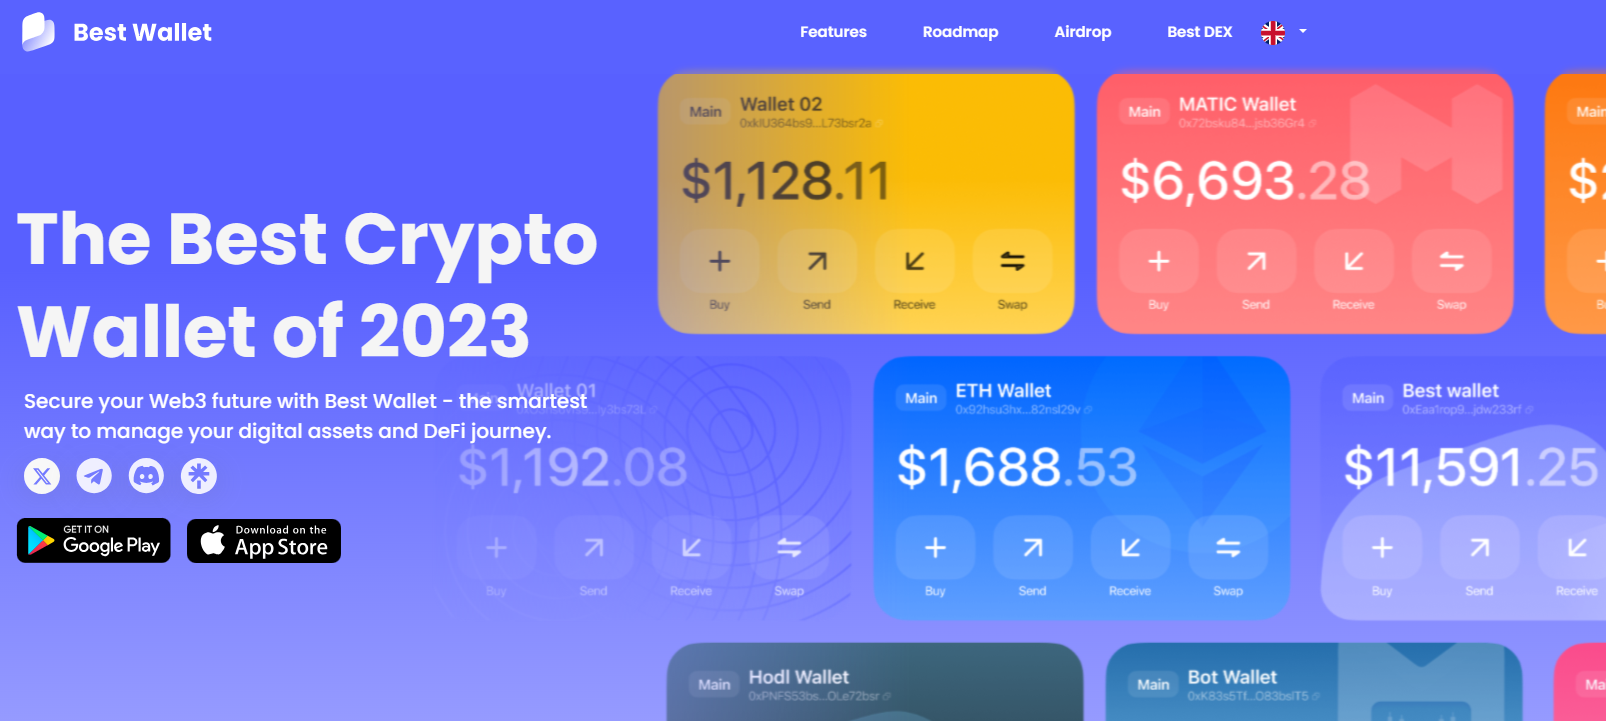 best wallet best crypto app homepage